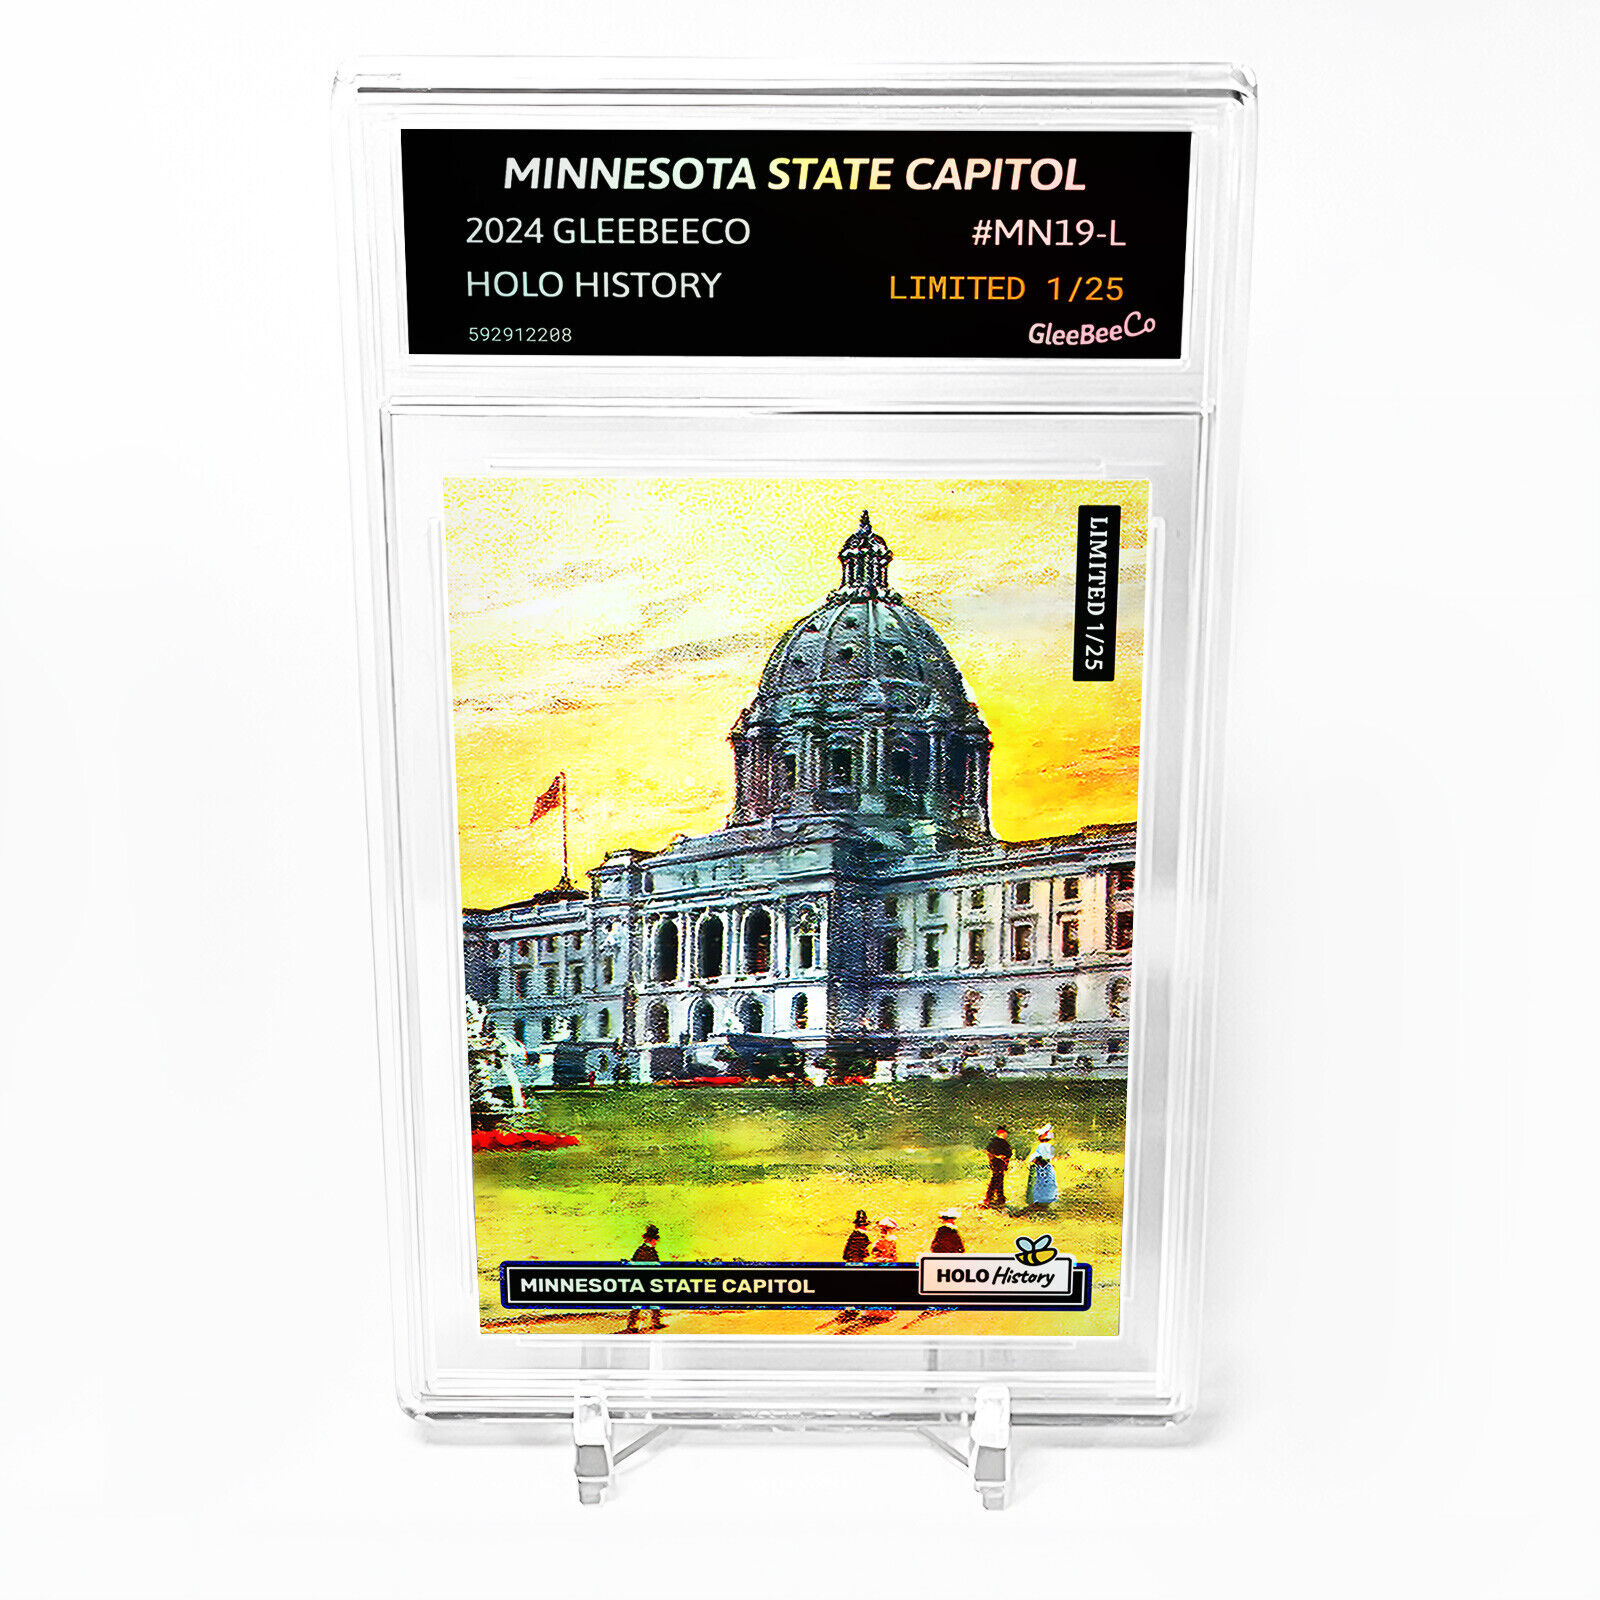 MINNESOTA STATE CAPITOL, ST. PAUL Minnesota State Capitol Card GBC #MN19-L /25